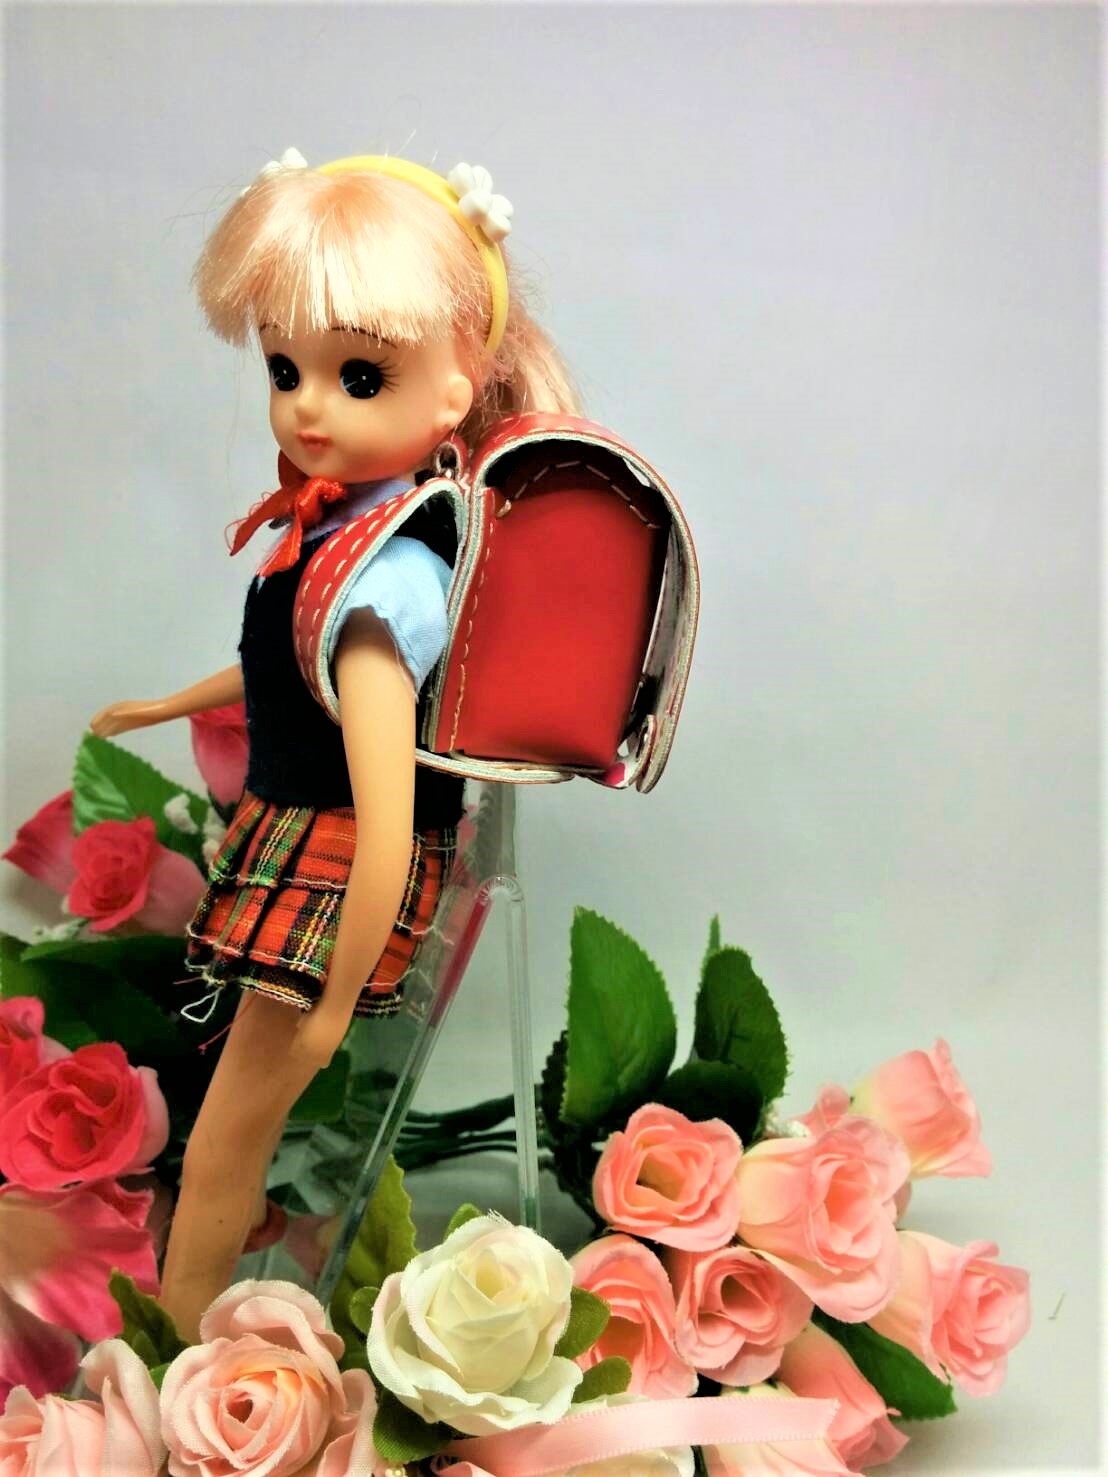 可愛いお人形にもミニランキーホルダー ランドセルのリメイク 革製品専門店 Canars Japan カナーズ ジャパン